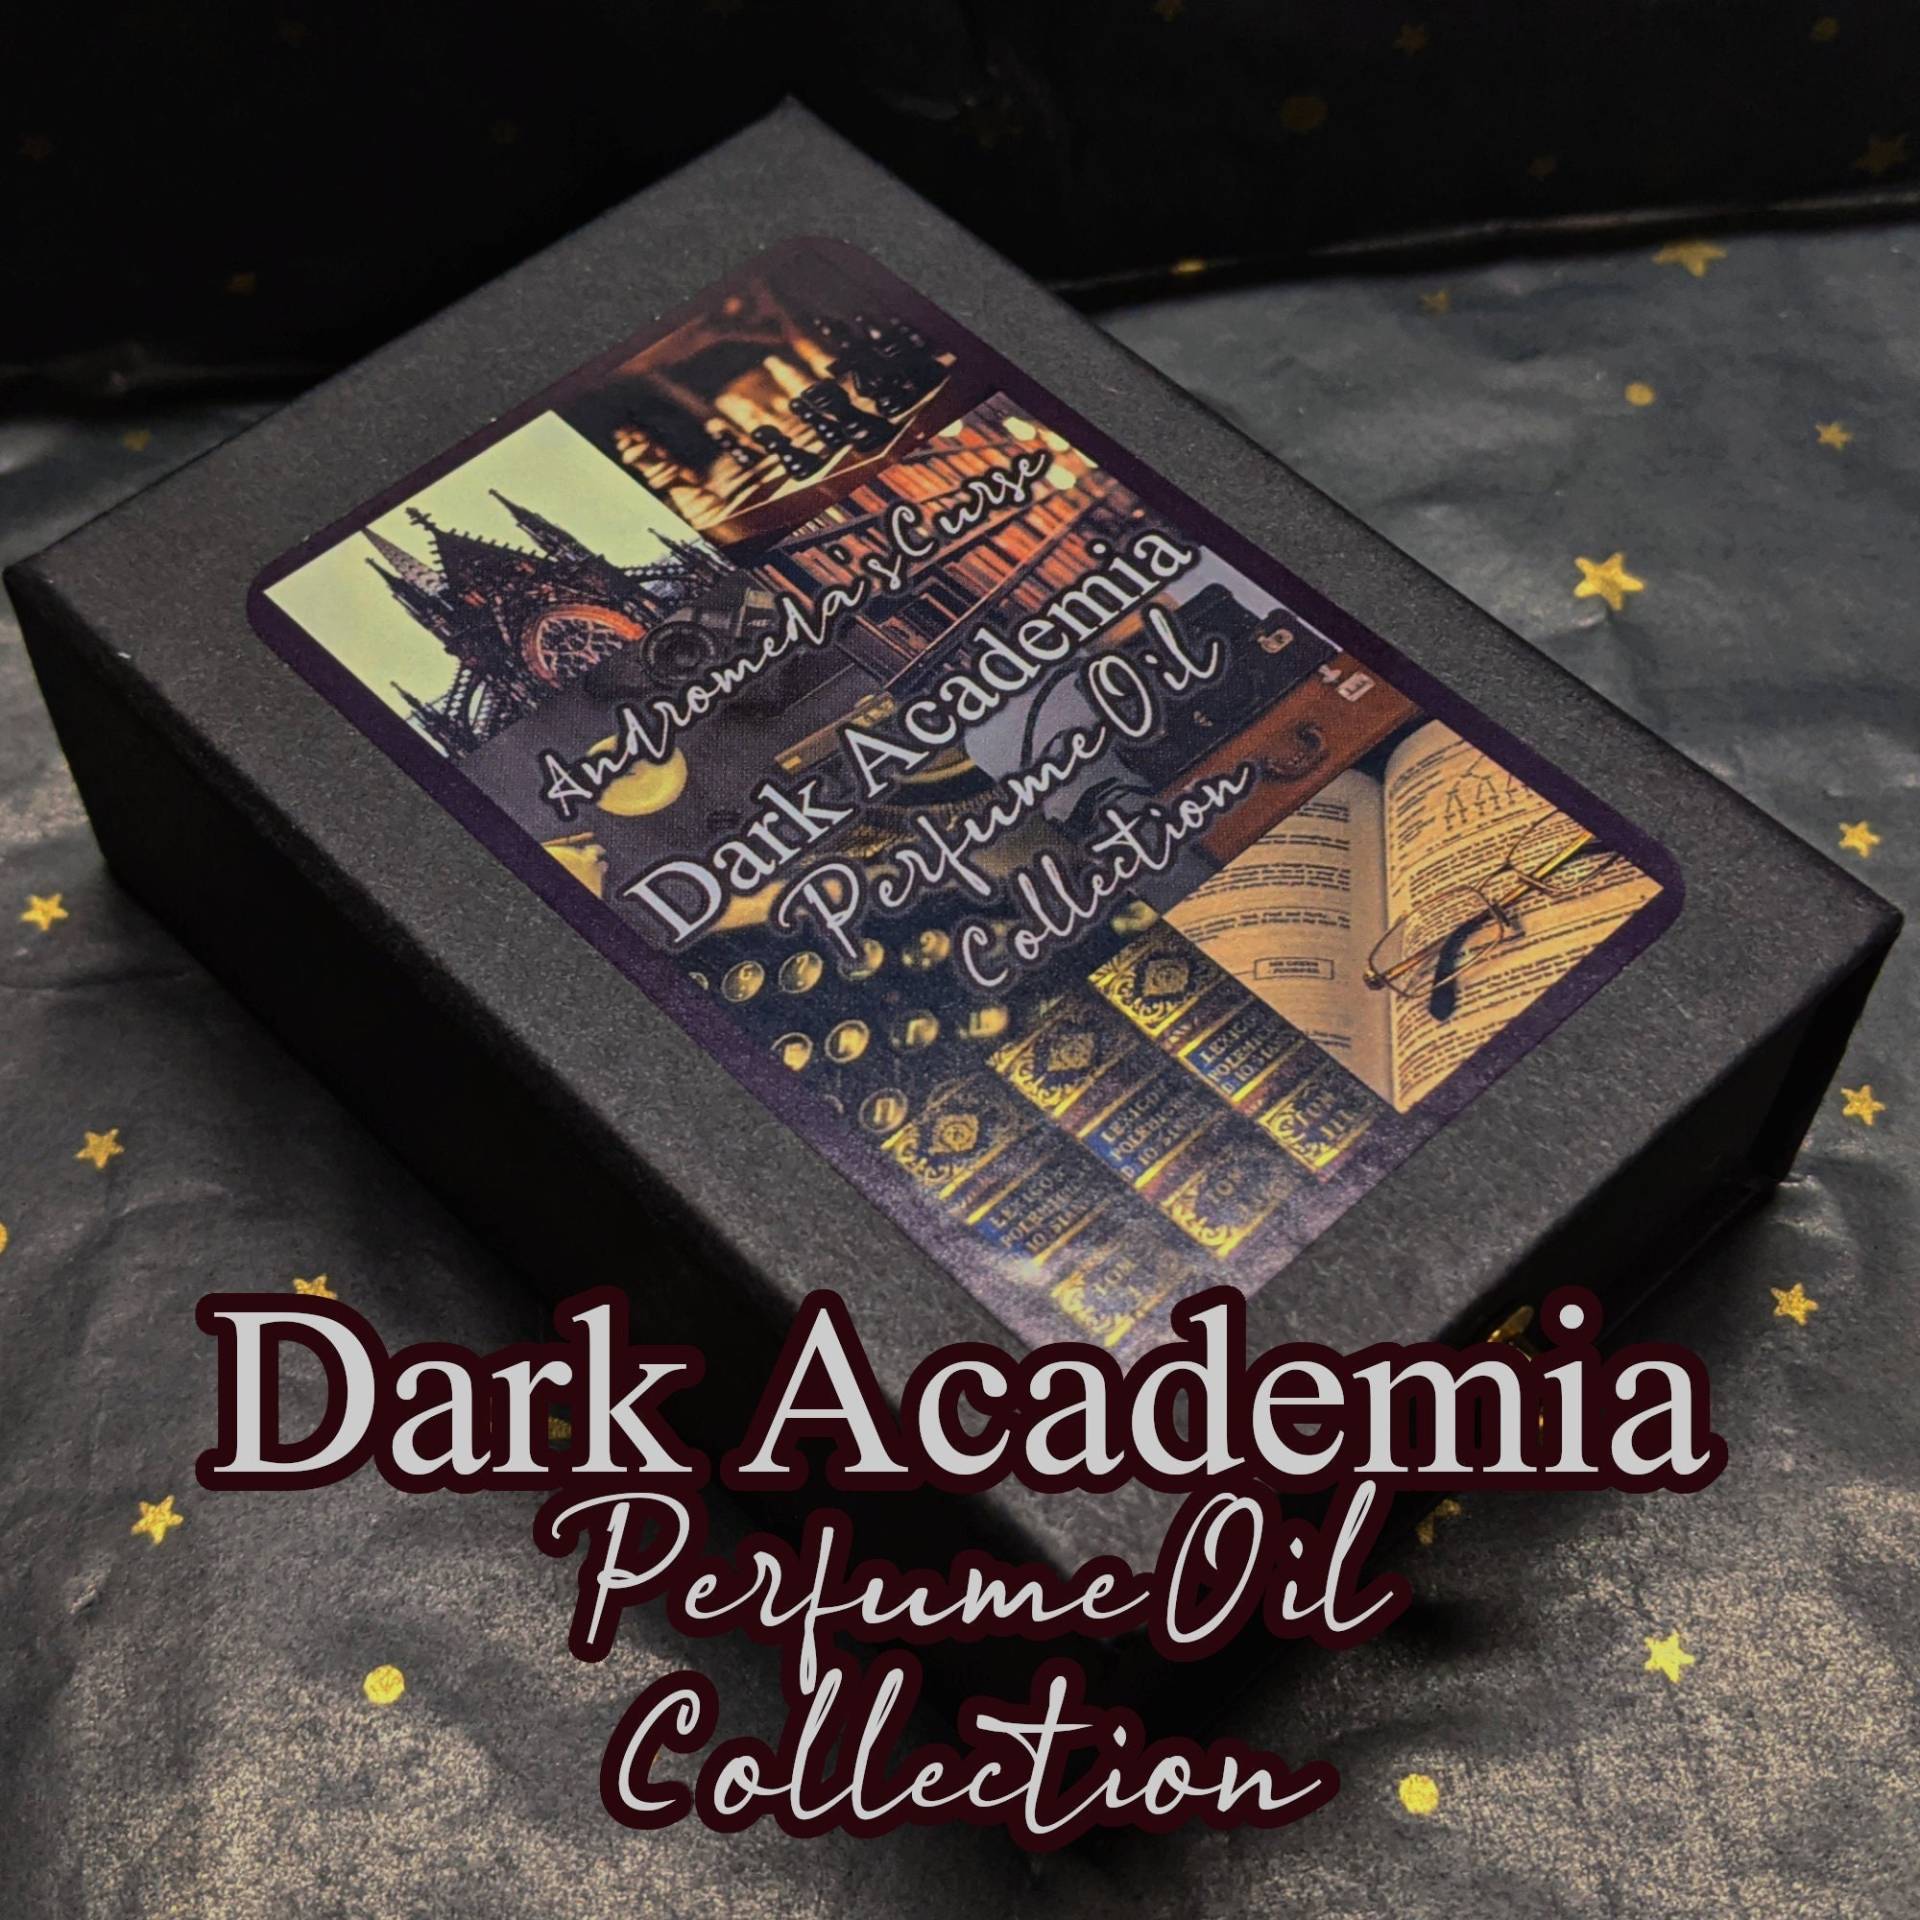 Dark Academia Geschenkbox - Rollerball Parfümöl Vegan & Cruelty Free von AndromedasCurse